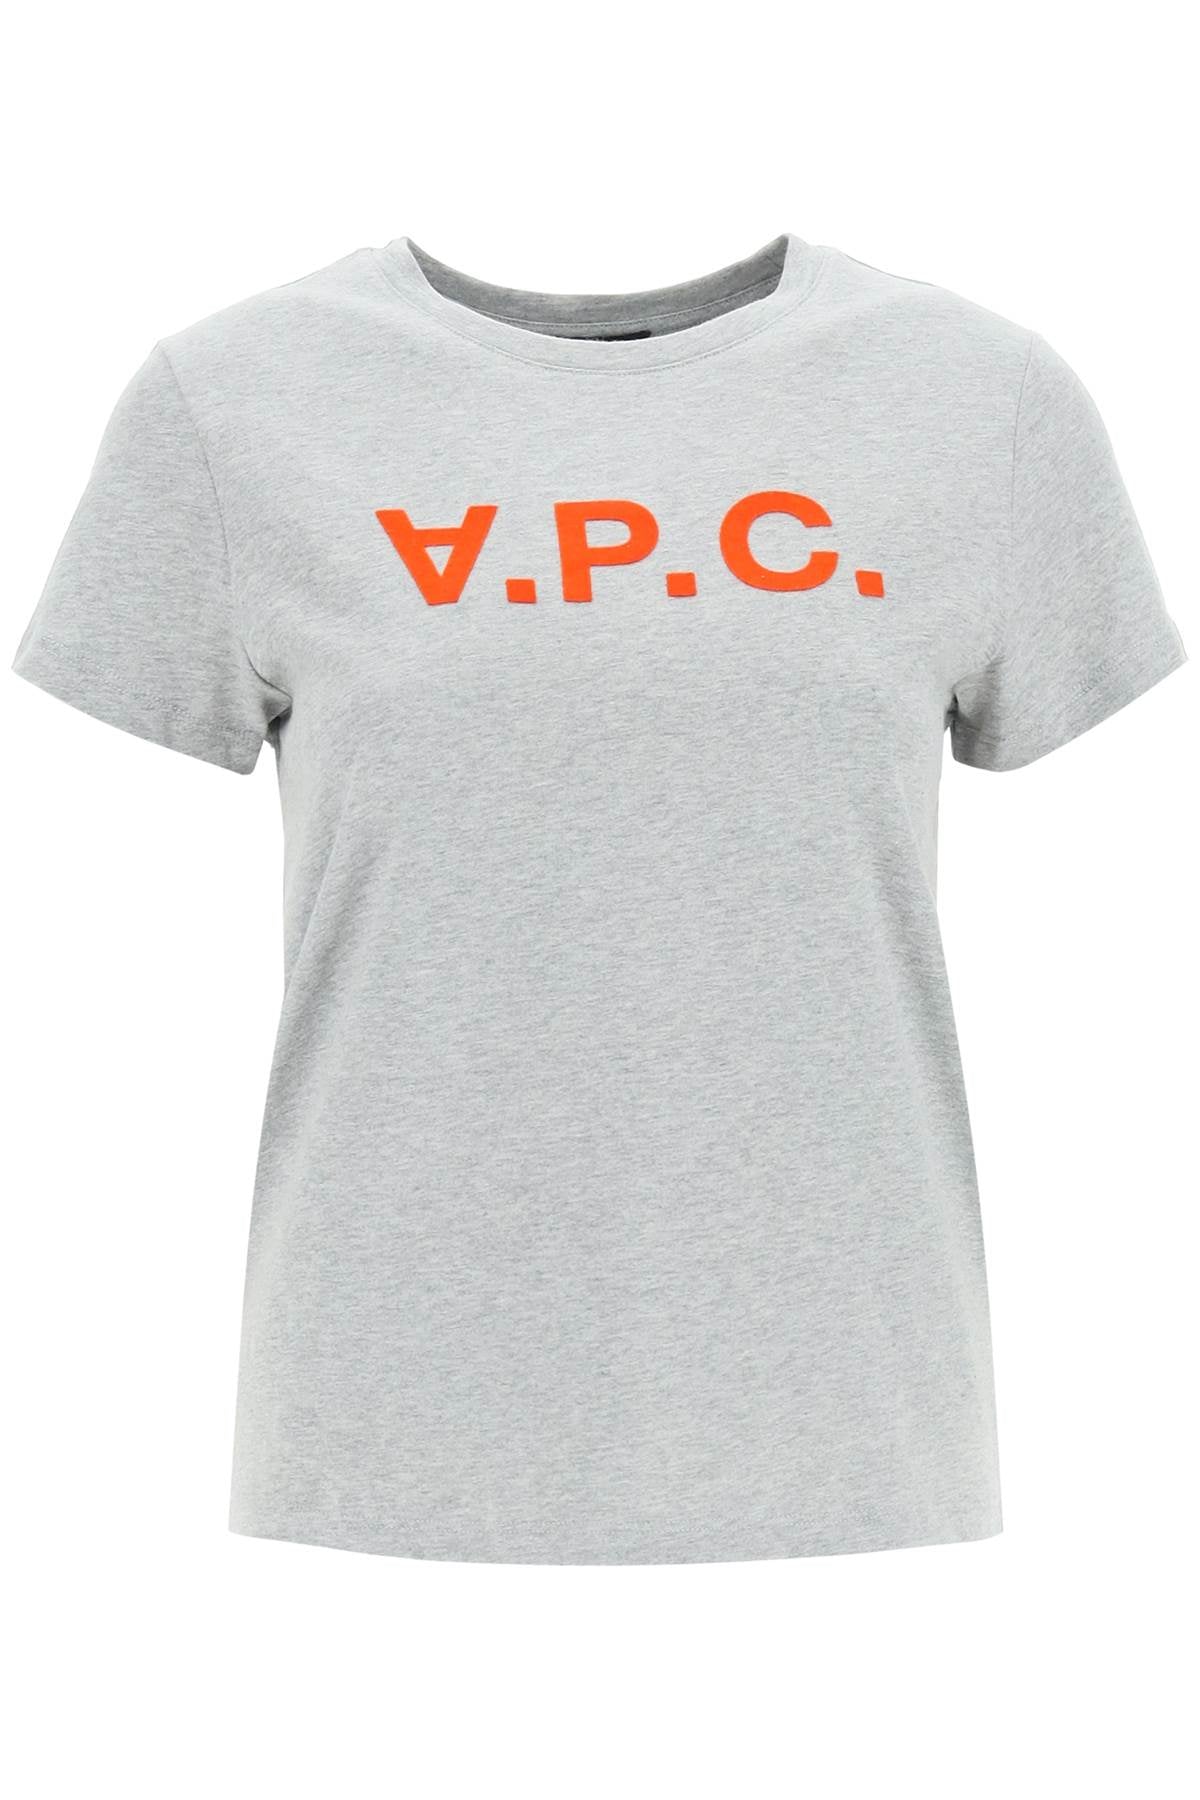 A.P.C-T Shirt Logo Floccato-Donna